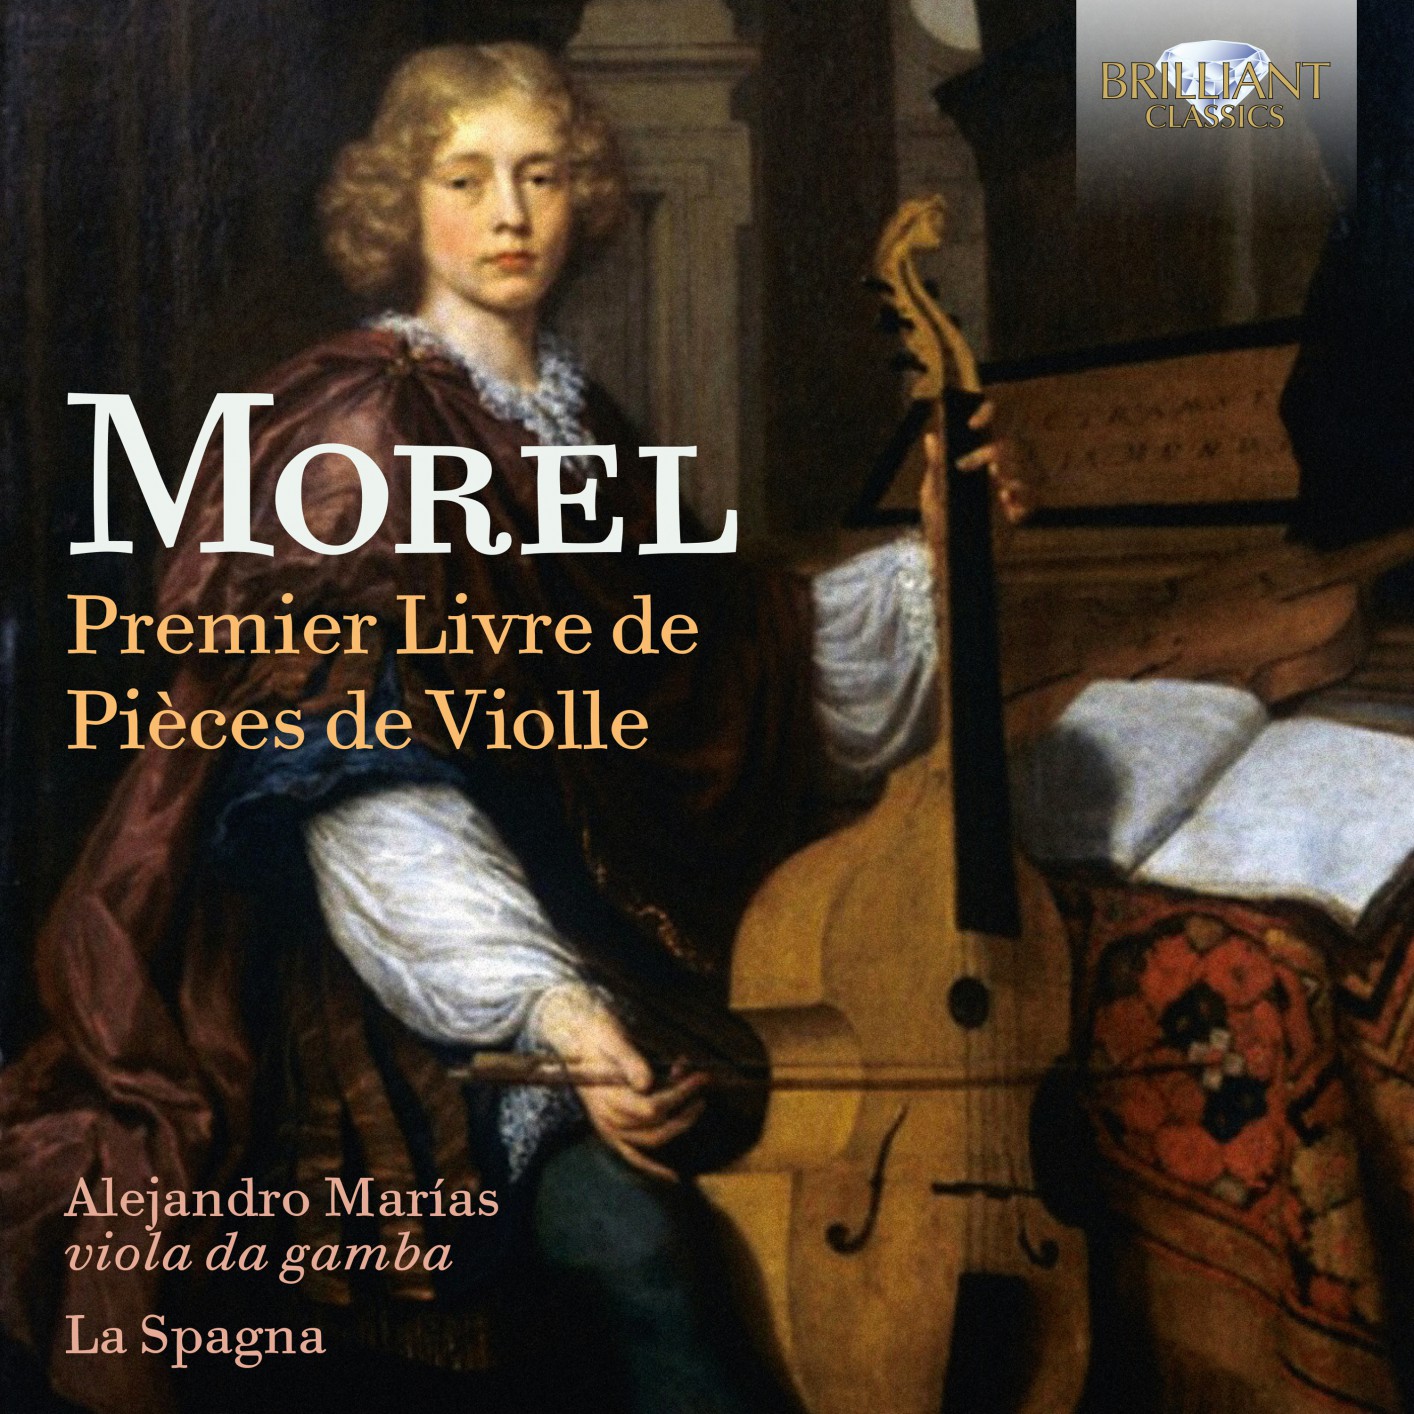 La Spagna & Alejandro Marias - Morel: Premier Livre de pieces de violle (2019) [FLAC 24bit/96kHz]